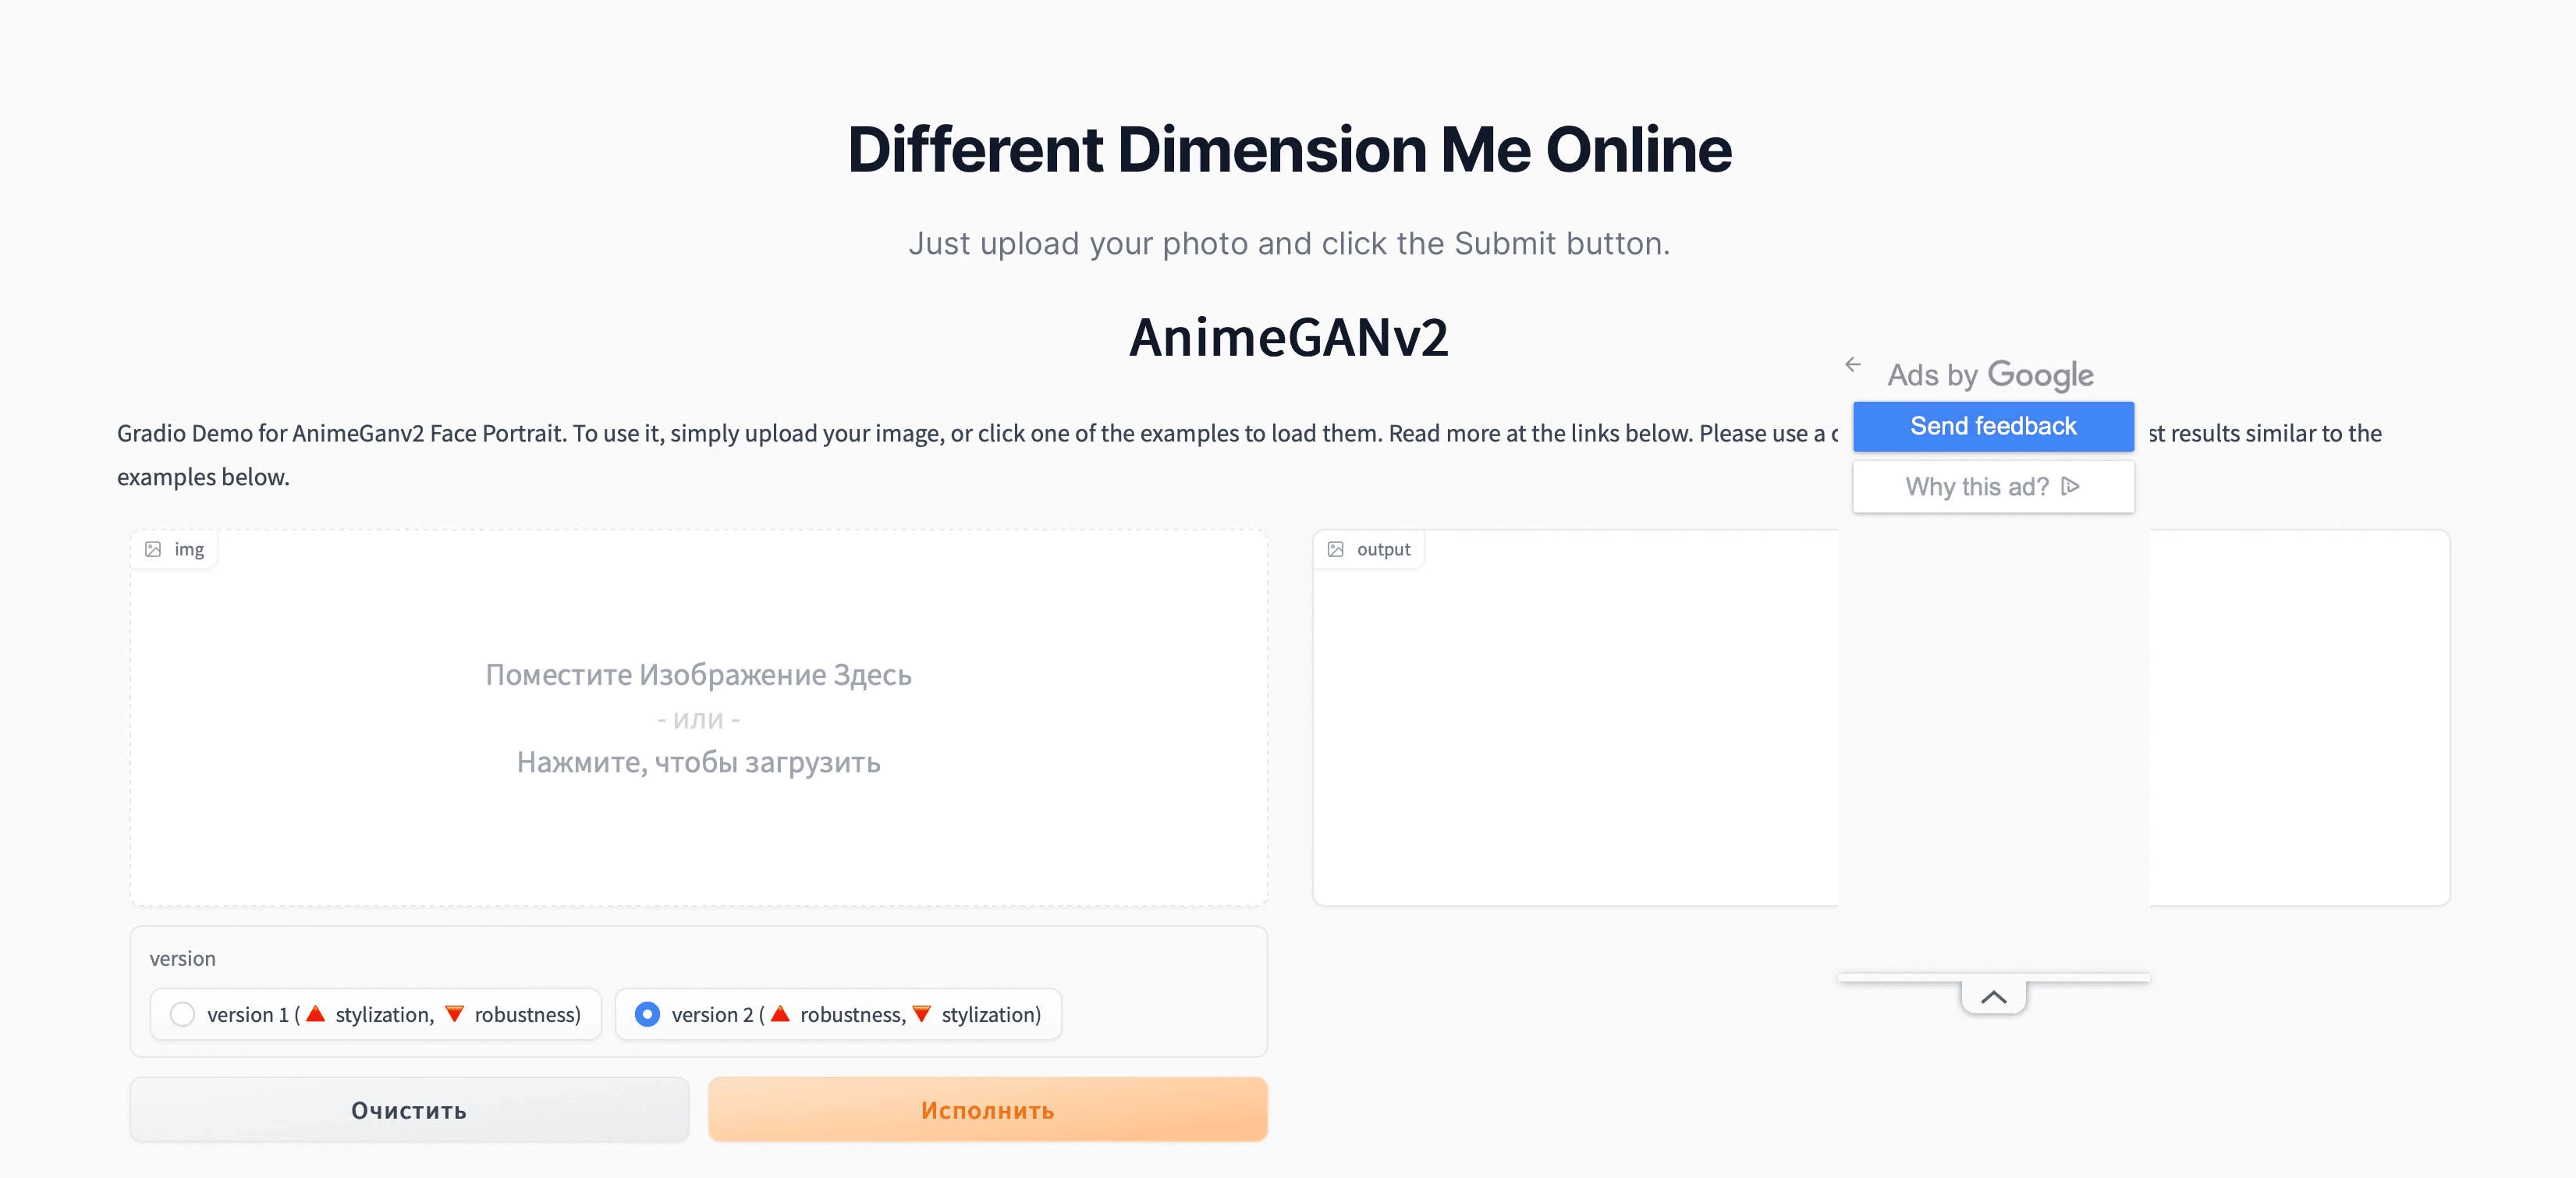 Different Dimension Me Online популярная нейросеть, которая делает из фото людей картинки в стиле аниме